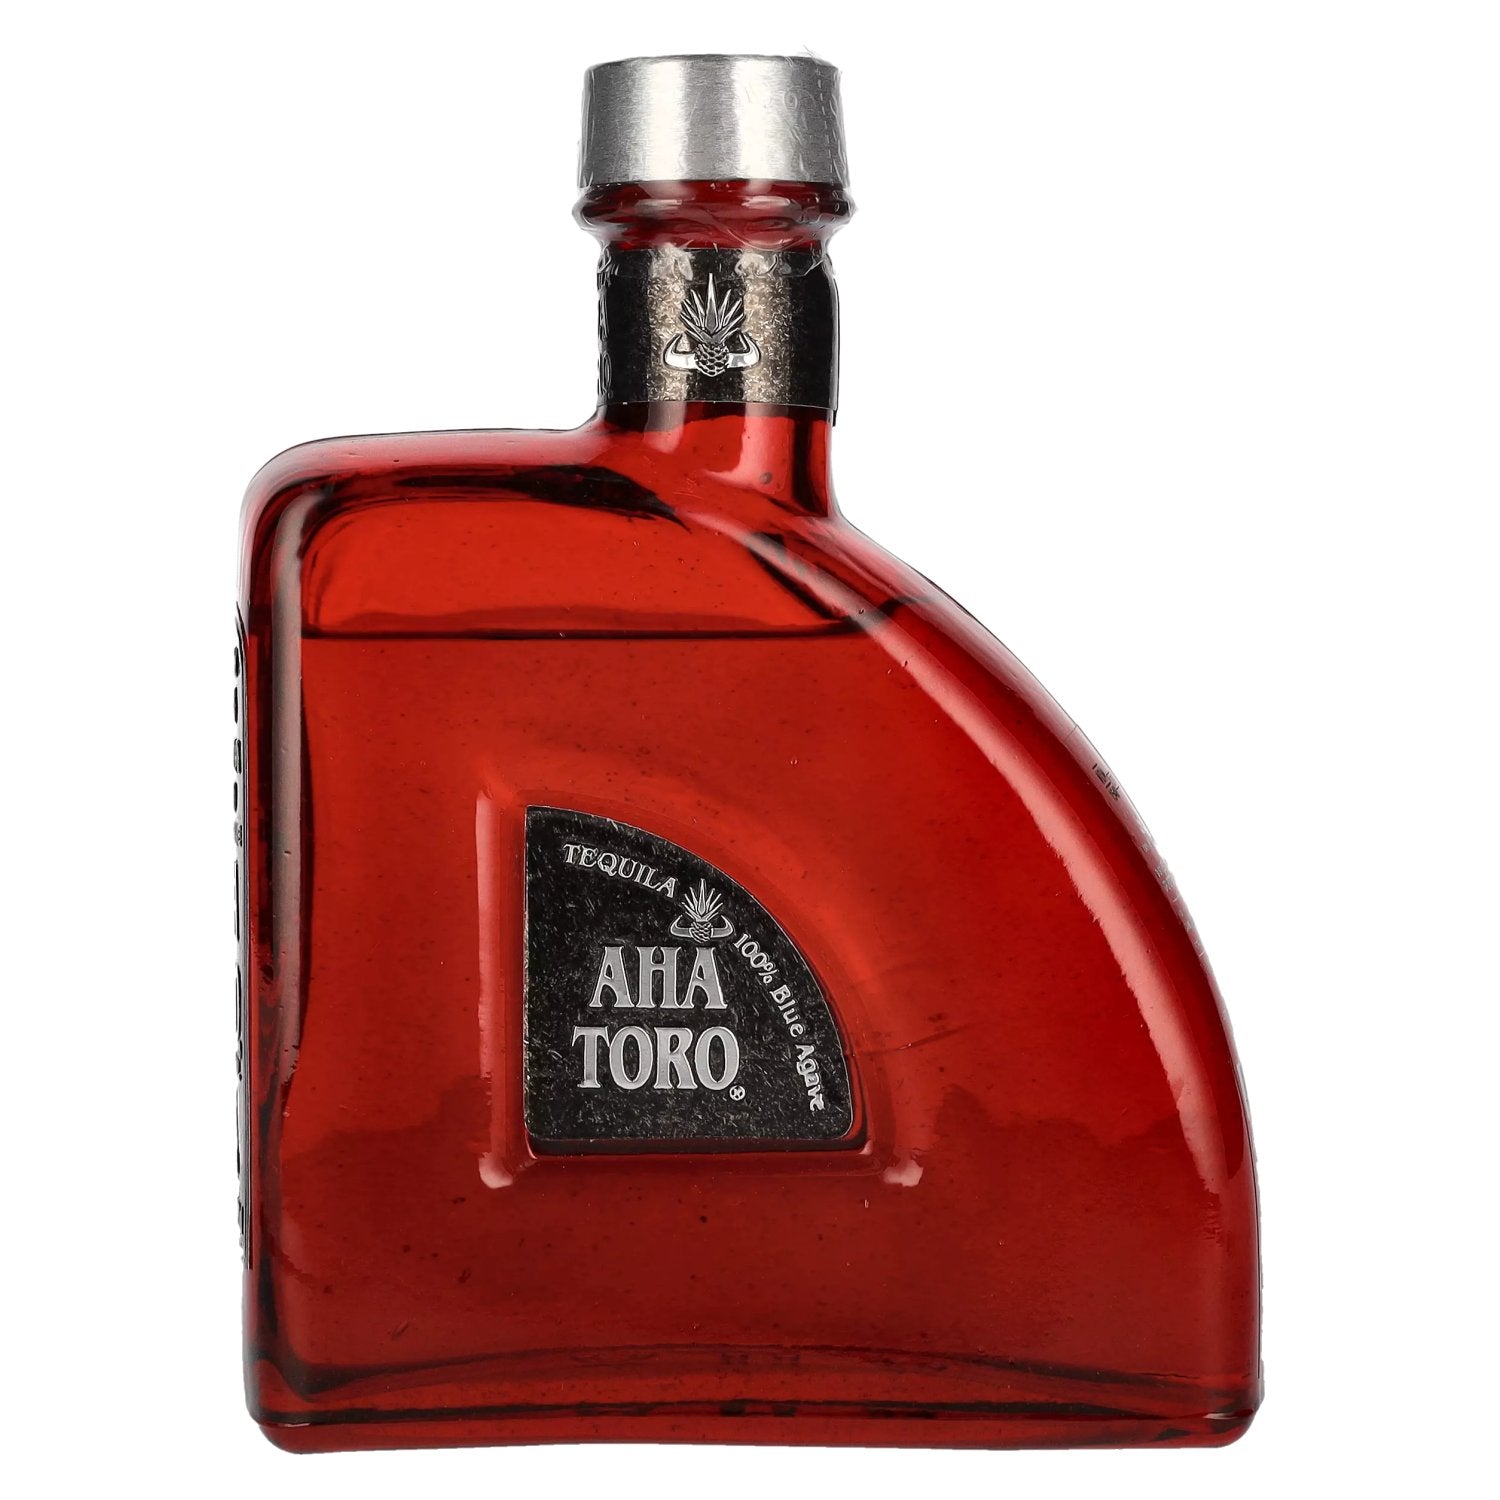 Aha Toro Tequila Anejo 40% Vol. 0,7l